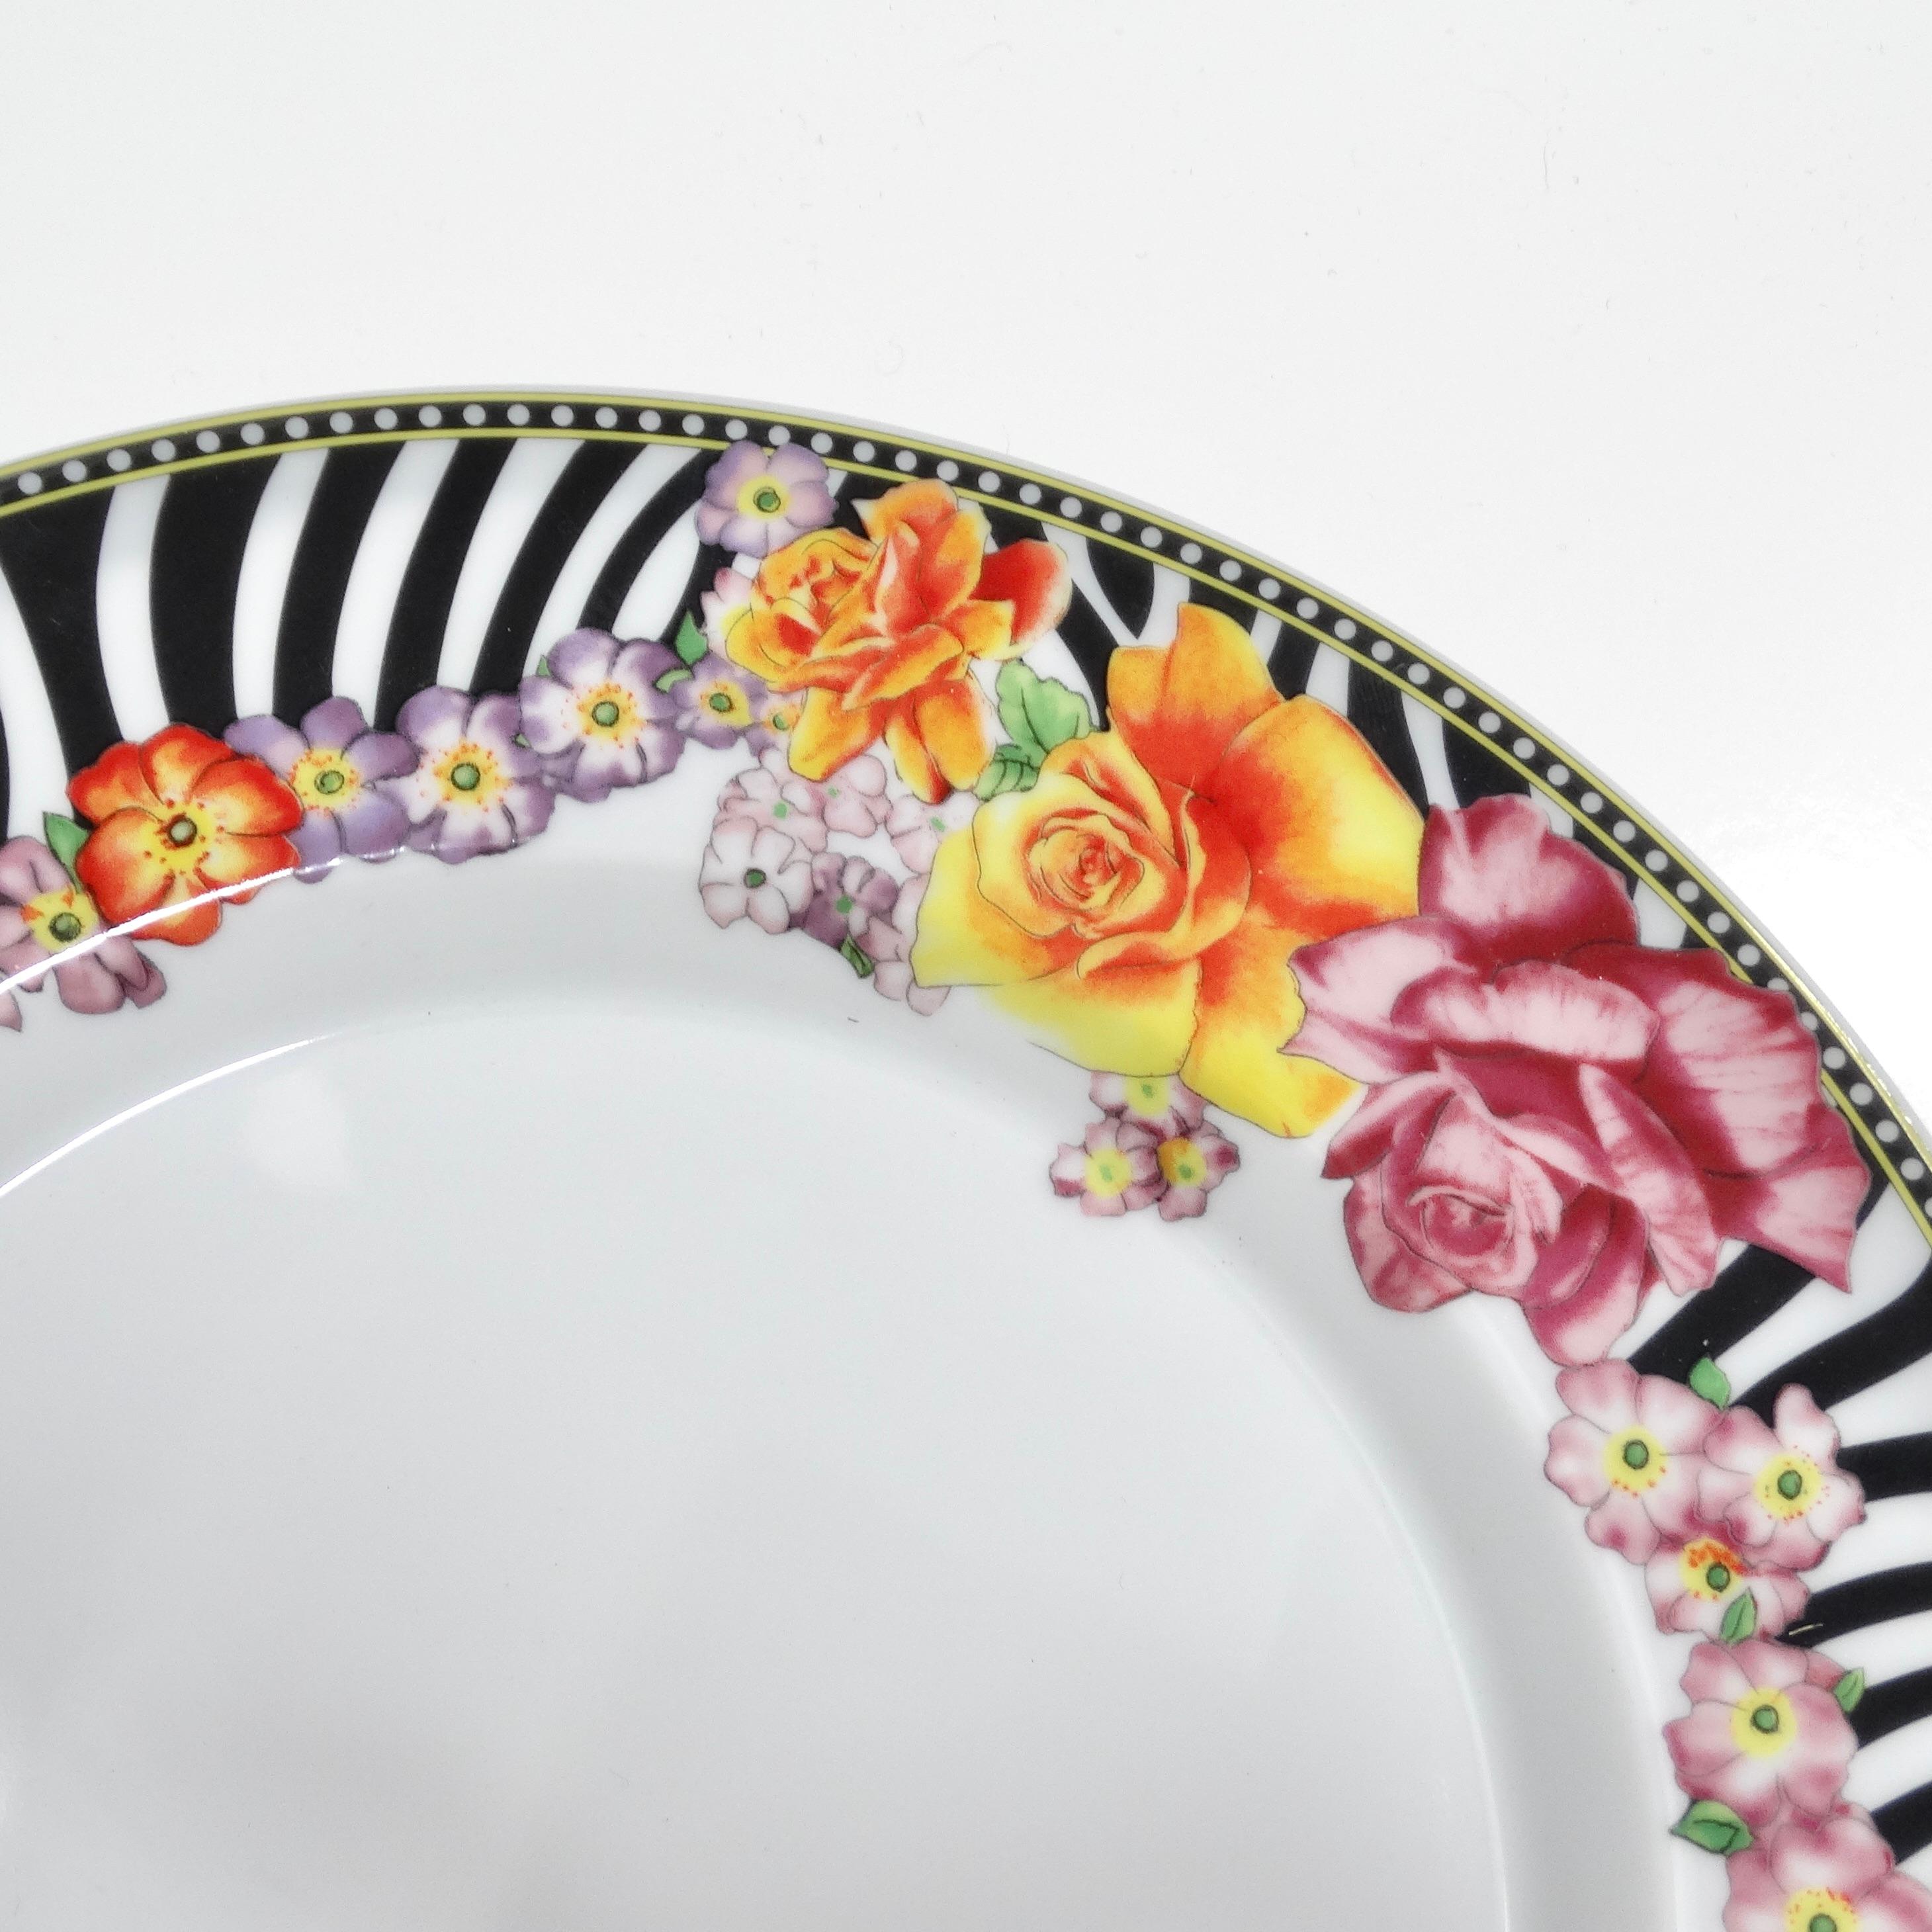 Die Versace Rosenthal 1990s Porcelain Oval Serving Platter ist ein Meisterwerk von 14